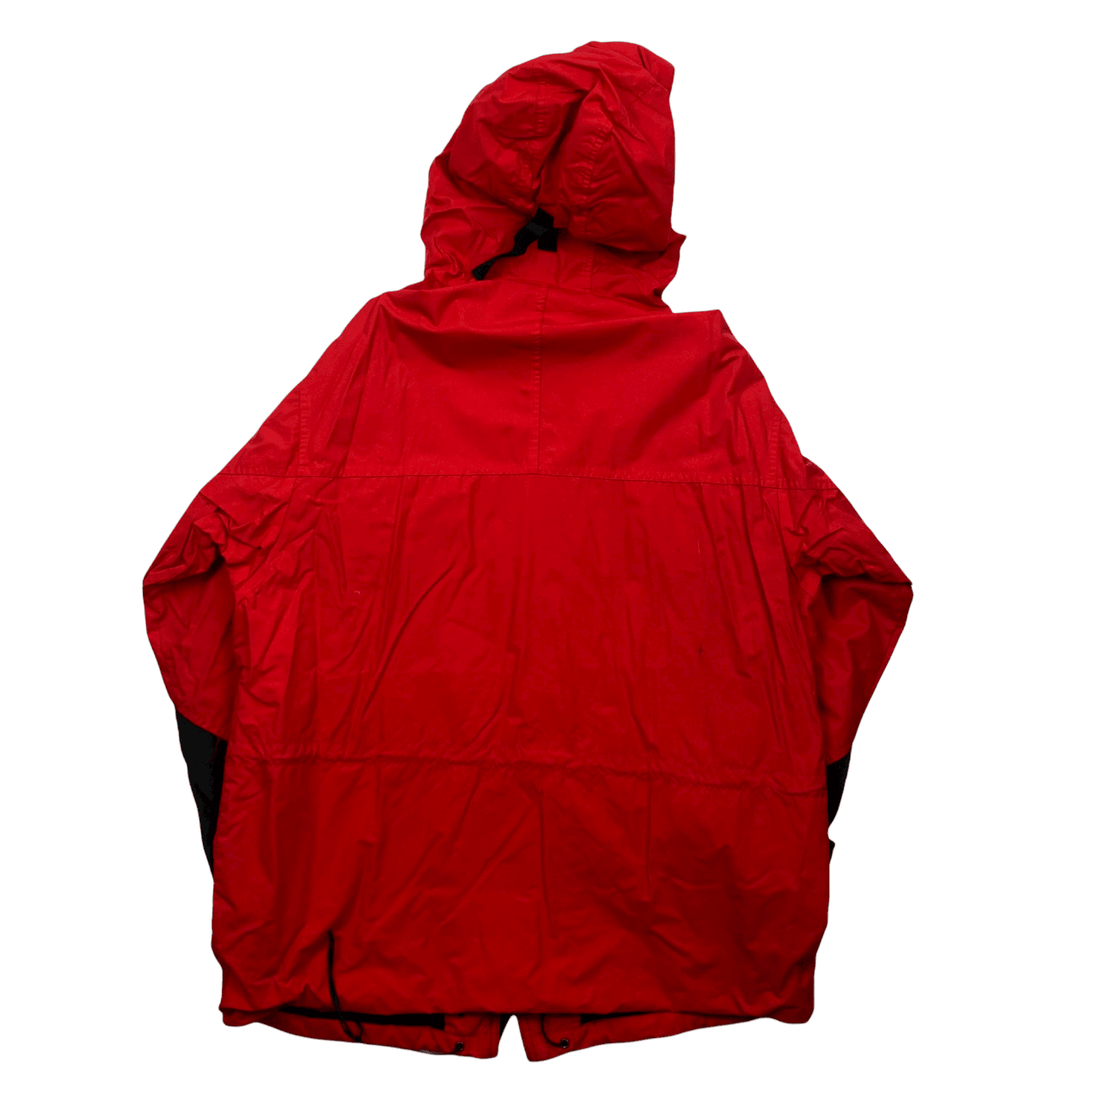 Vintage 90s Red + Black Marlboro Adventure Team Spell-Out Waterproof Jacket - Large - The Streetwear Studio